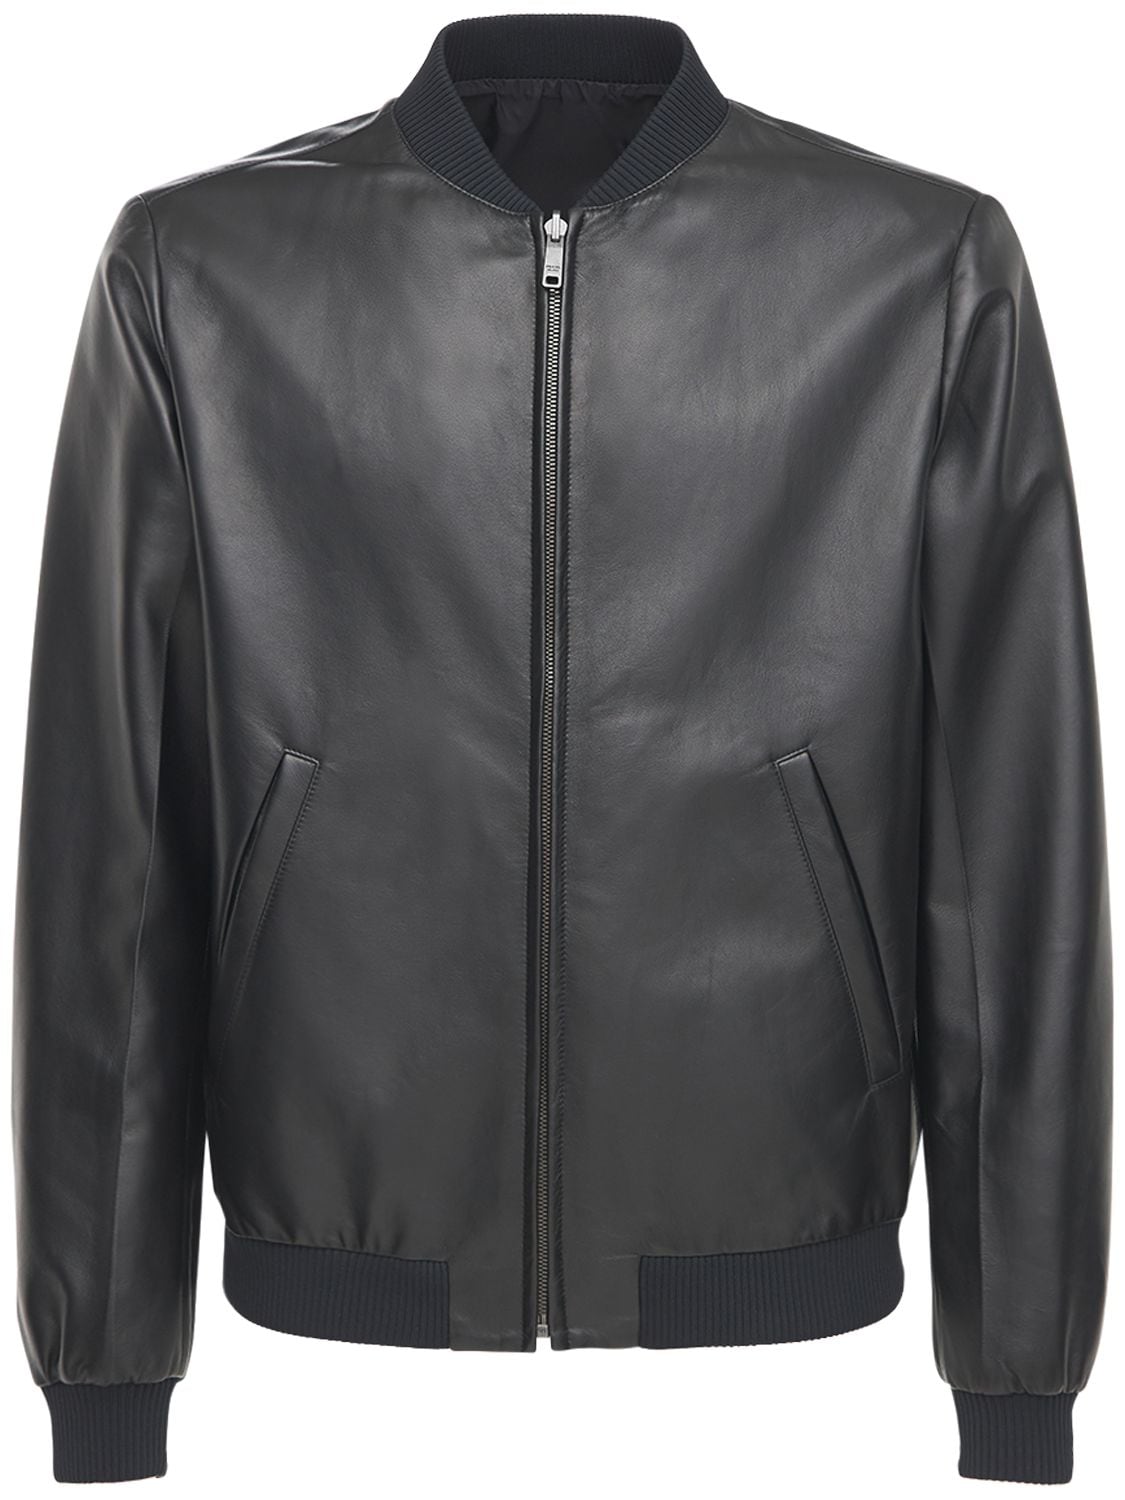 Reversible Leather & Nylon Jacket